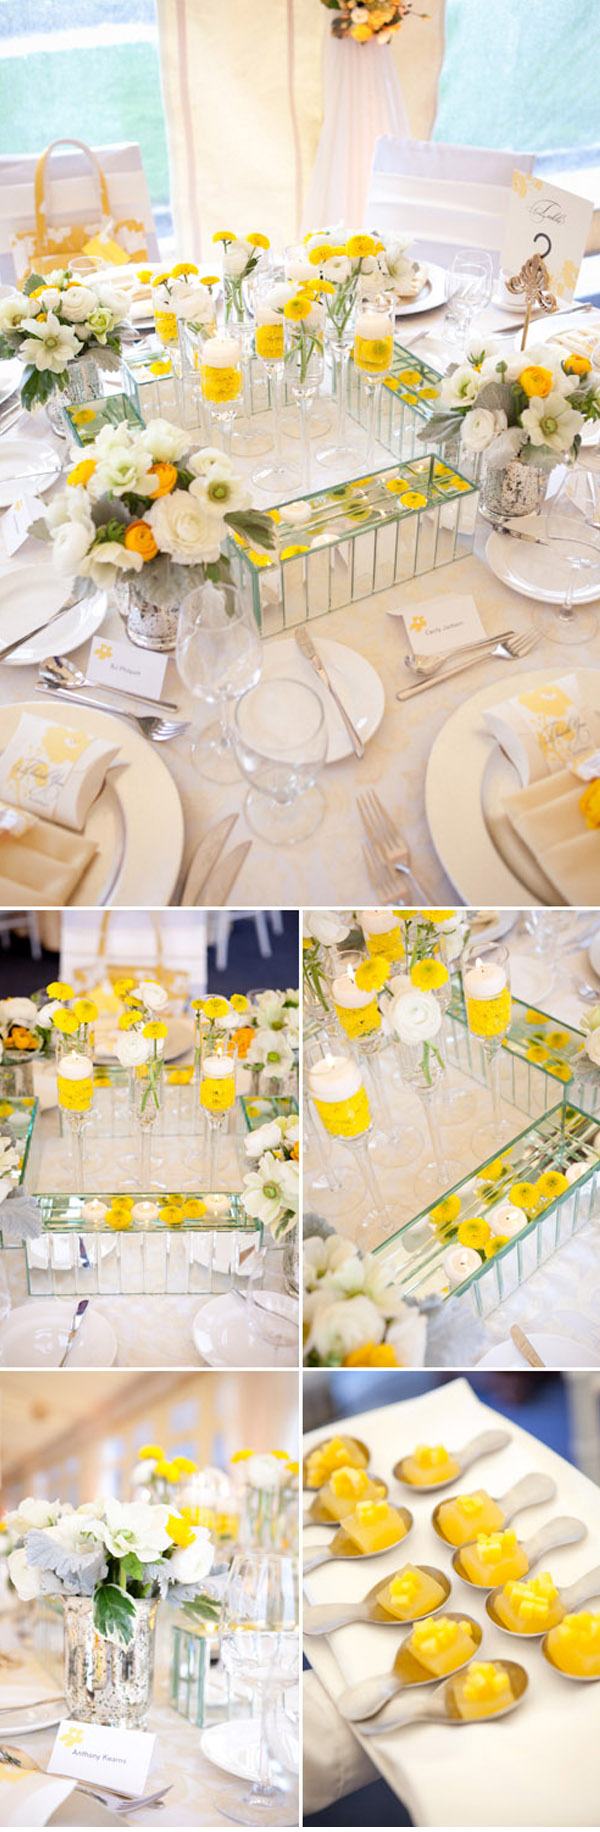 Decoración de mesa en amarillo amarillo_4_600x1832 